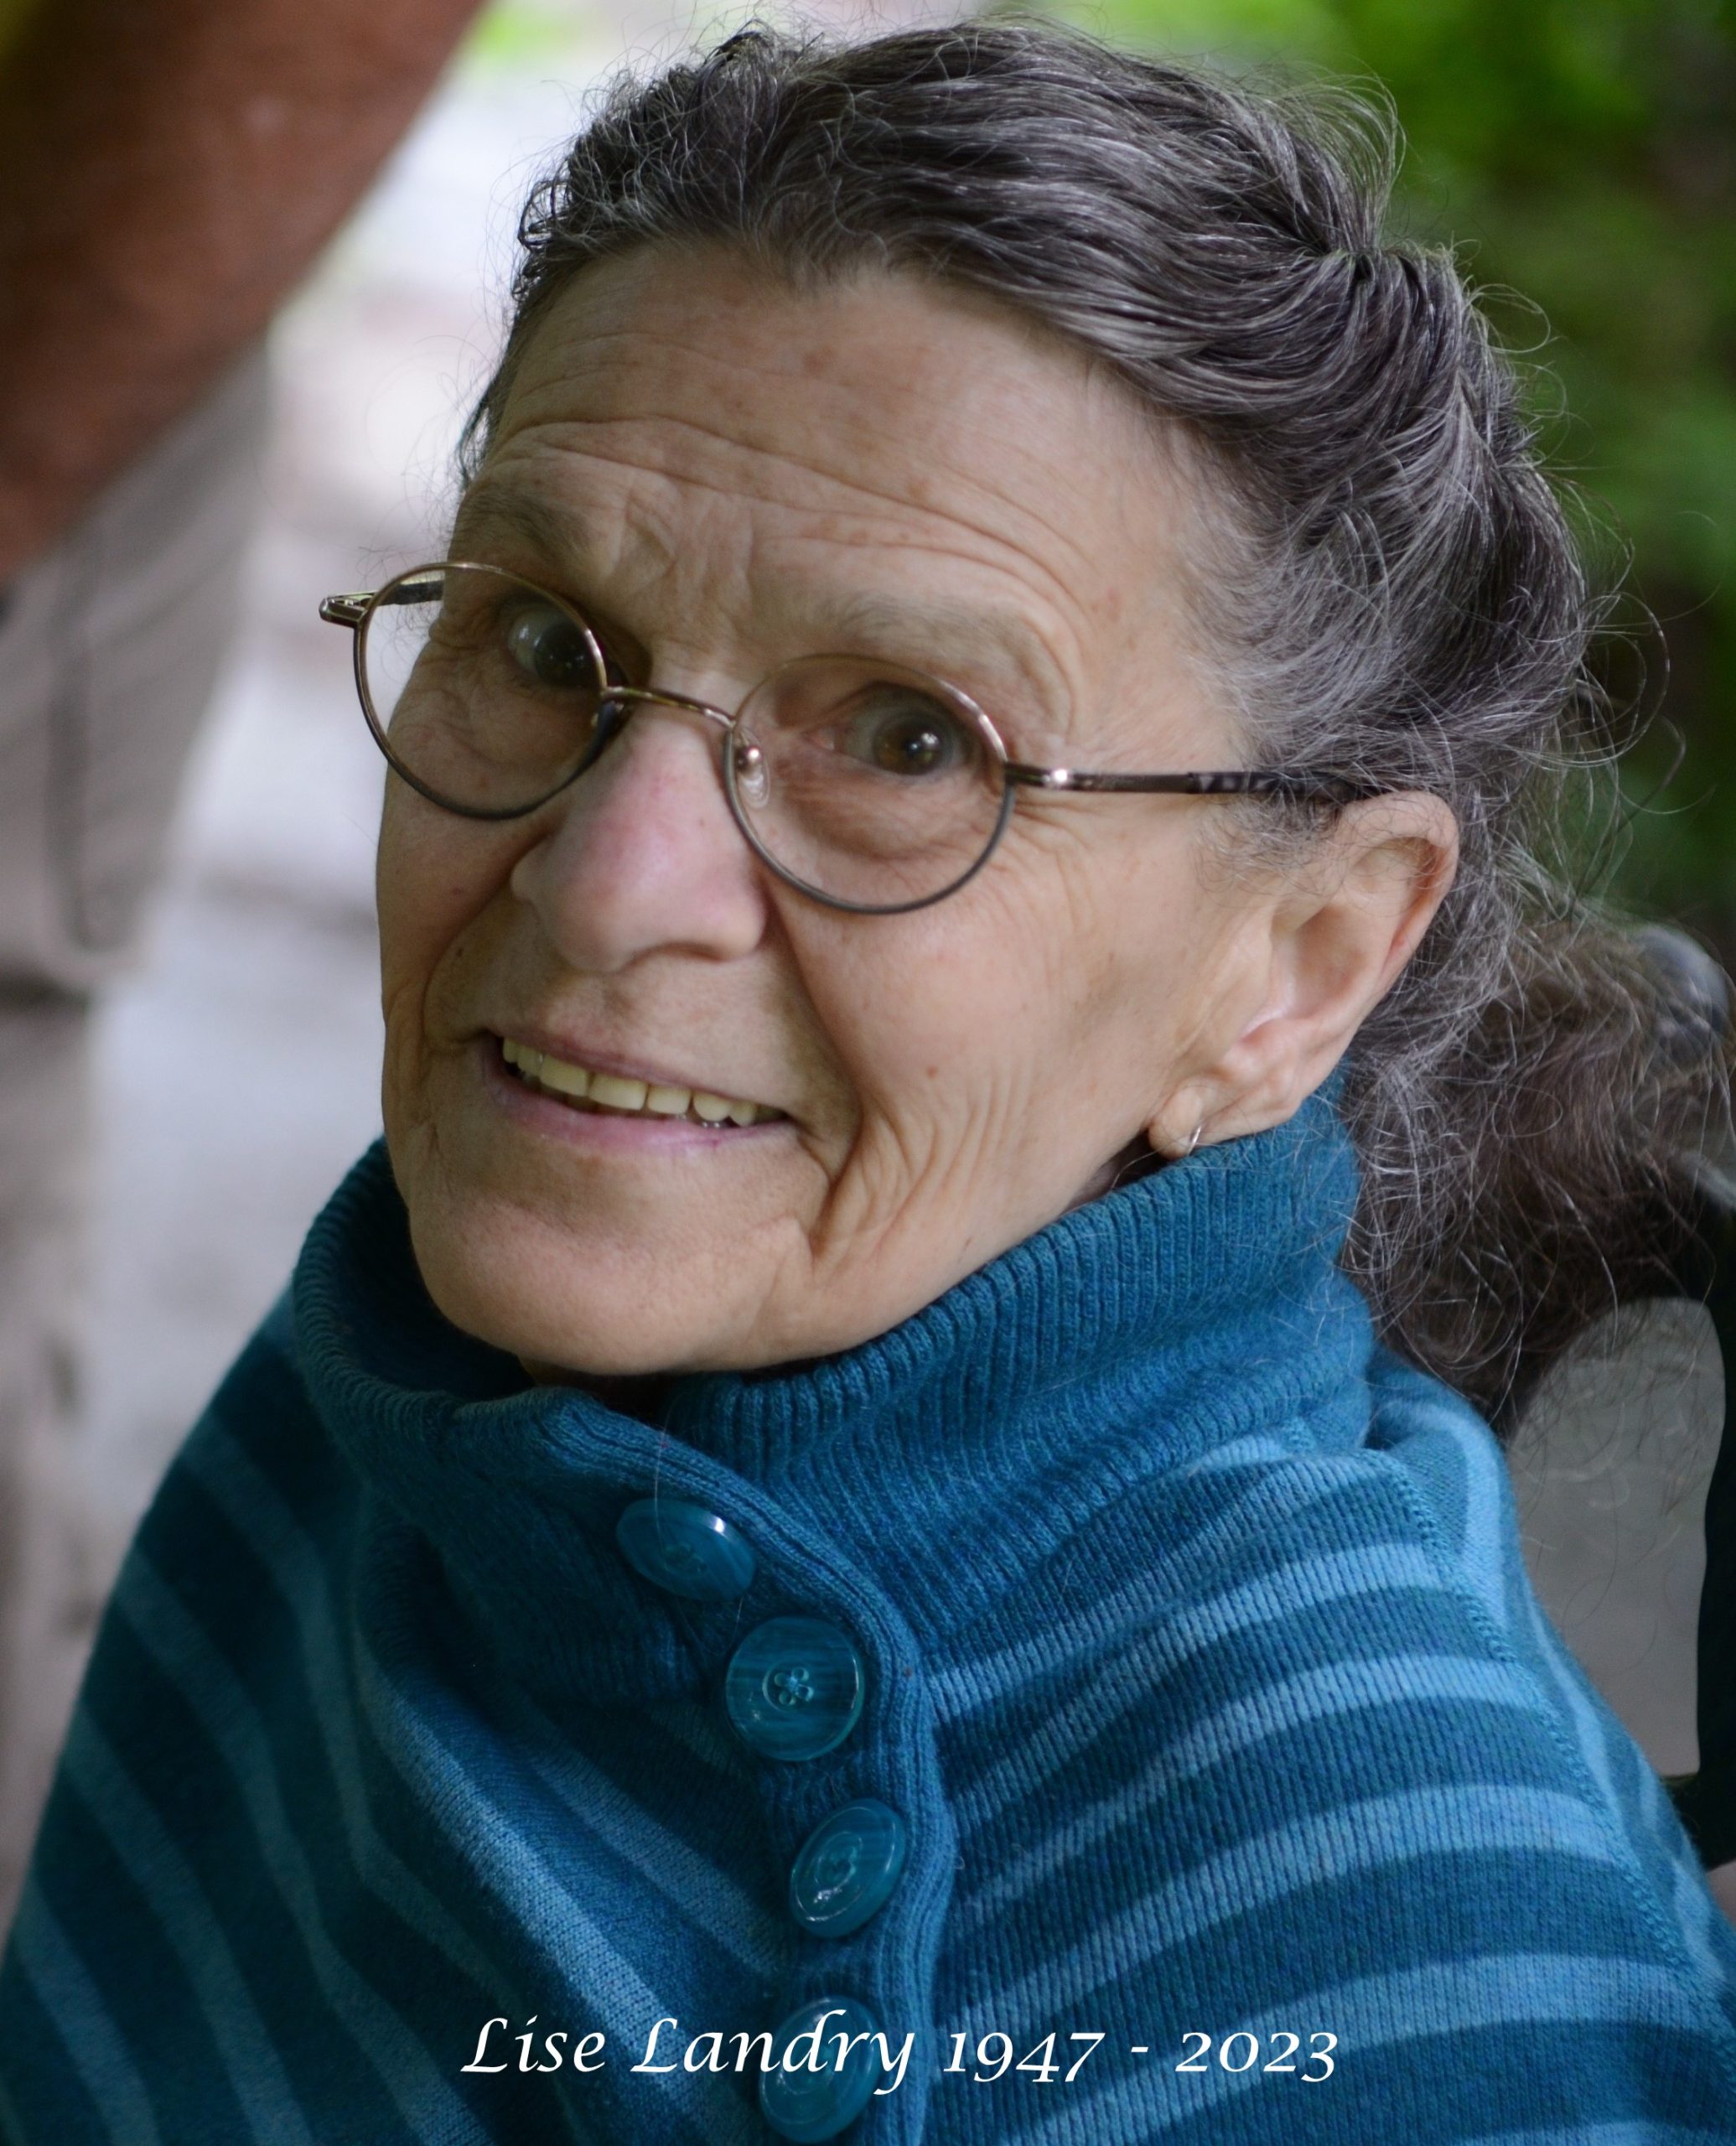 Tisser des liens durables : un hommage à Lise Landry 